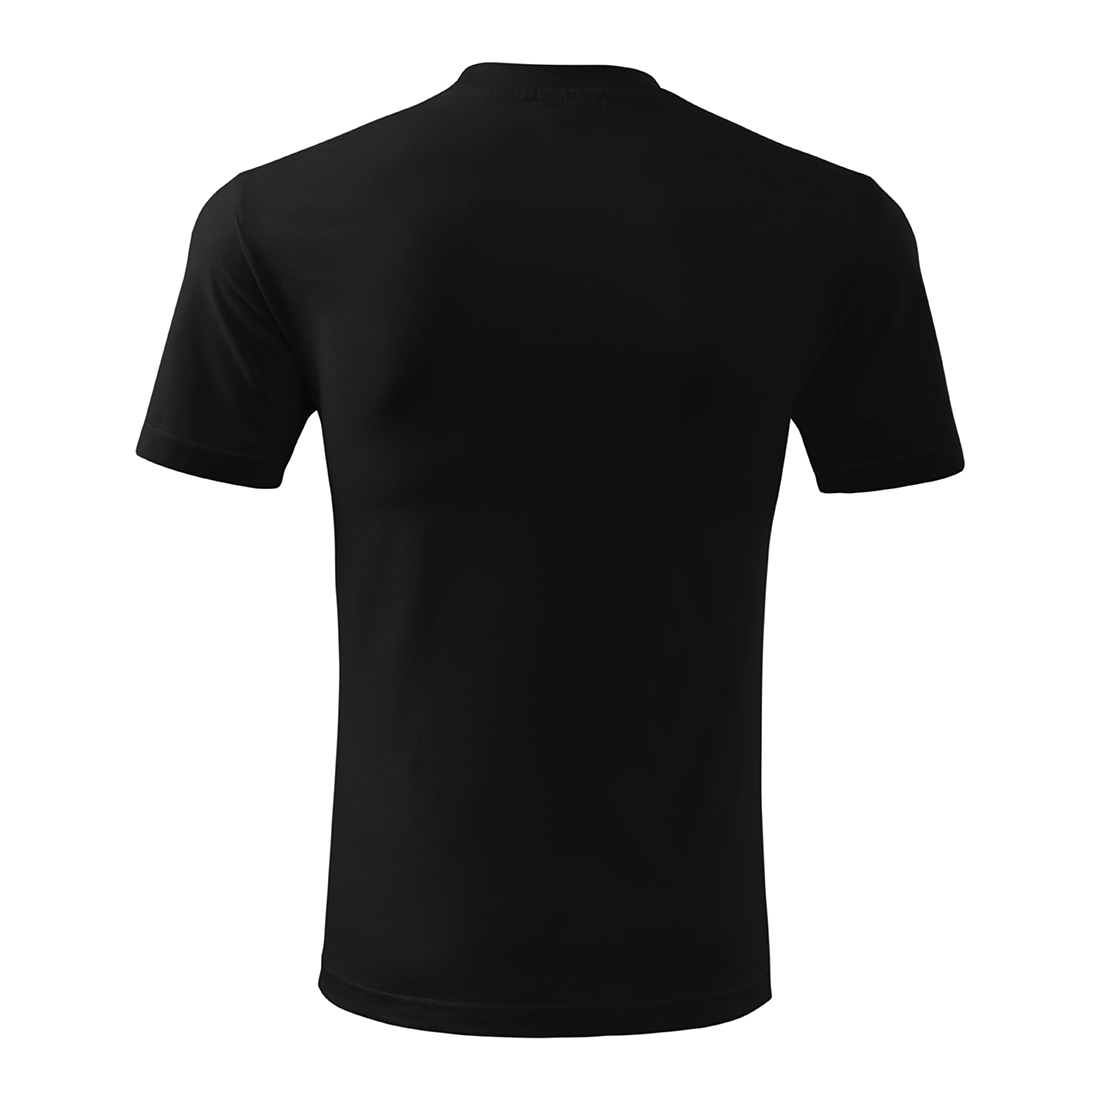 Camiseta unisex clásica - Ropa de protección